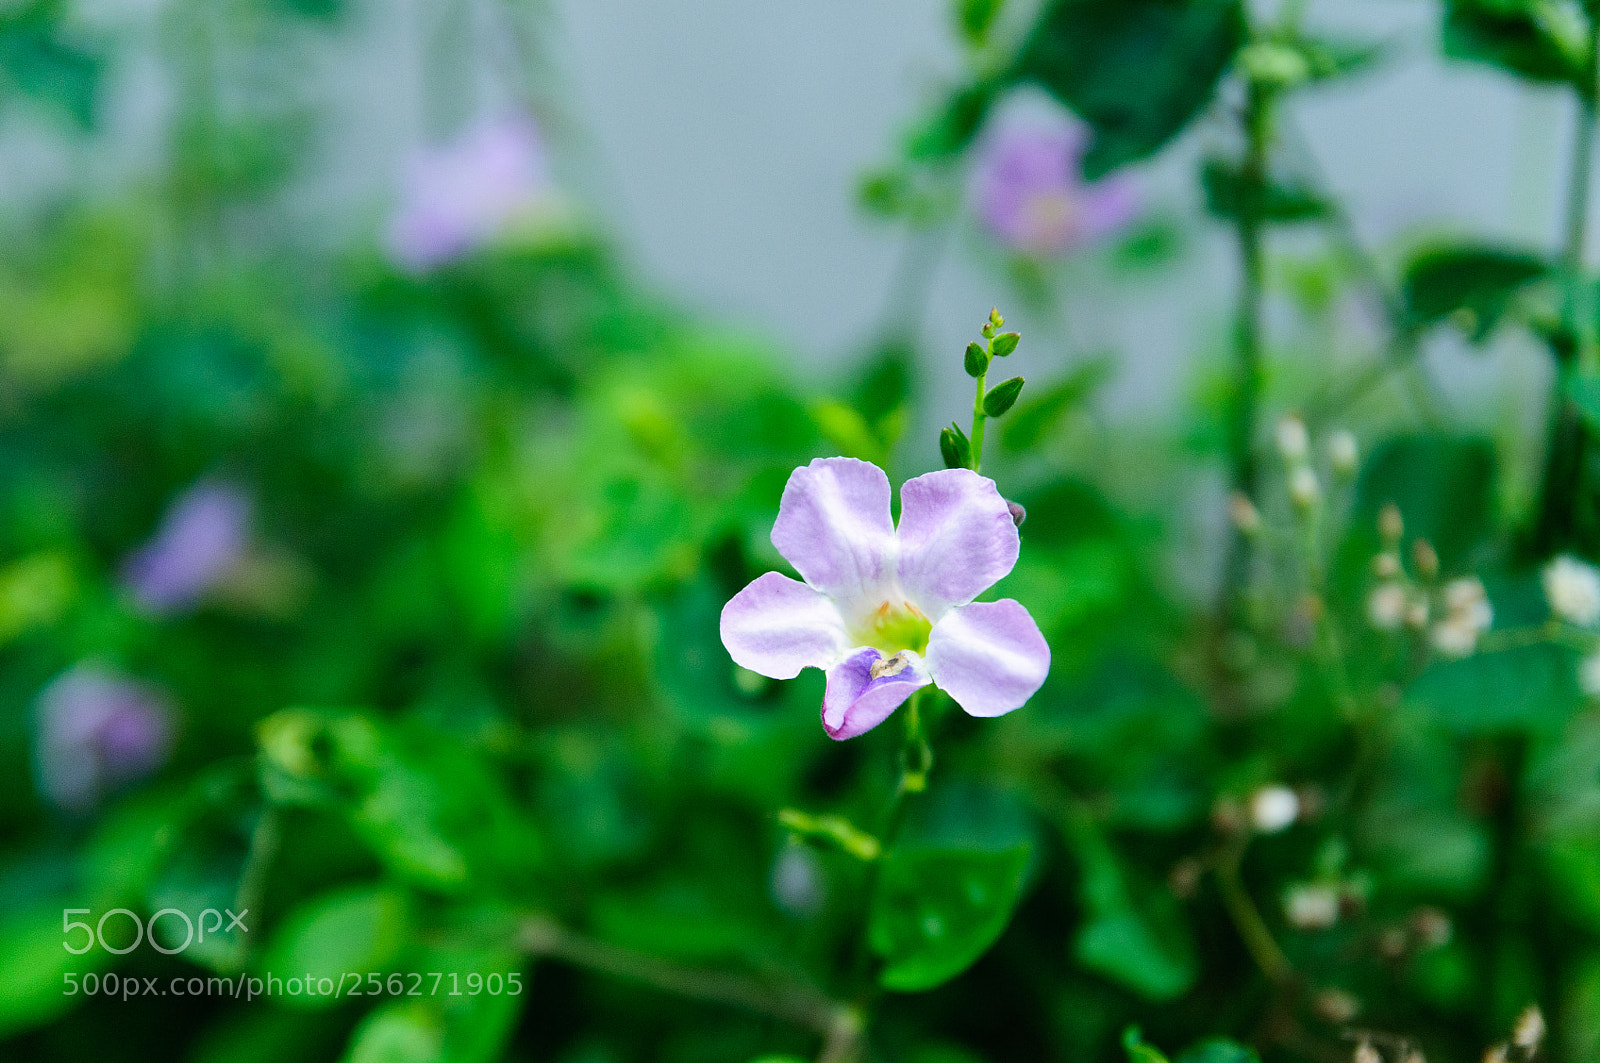 Nikon D300 sample photo. Flower near my house photography